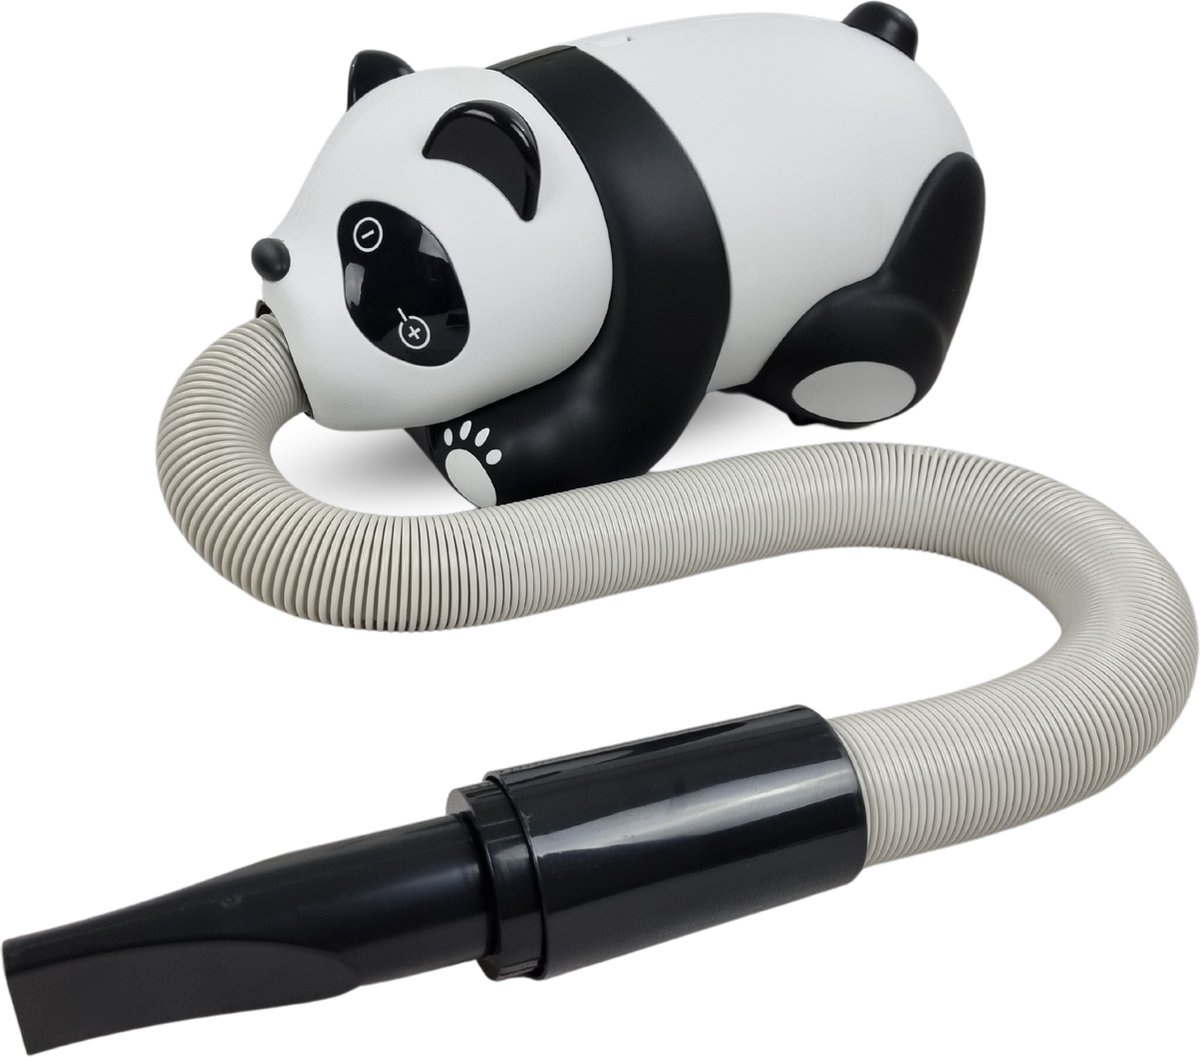 Topmast Panda Profession Waterblazer - 2500 Watt Power - Zwart Wit - Hondenfohn - Waterblazer voor Honden - Waterblazer Hond - Op Graden instelbare temperatuur met digitaal scherm